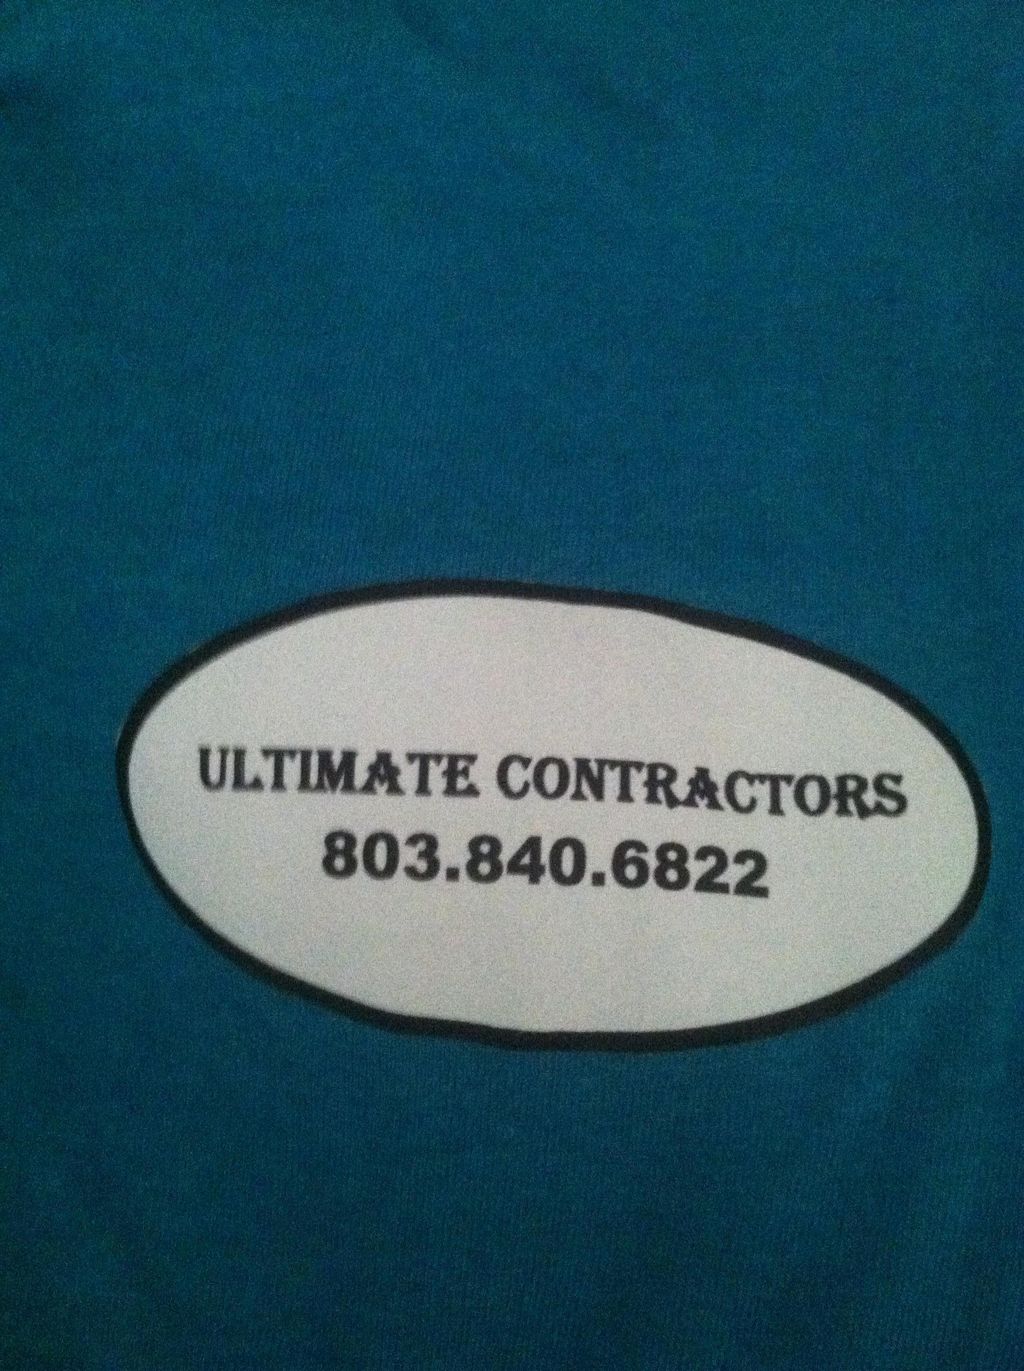 Ultimate Contractors